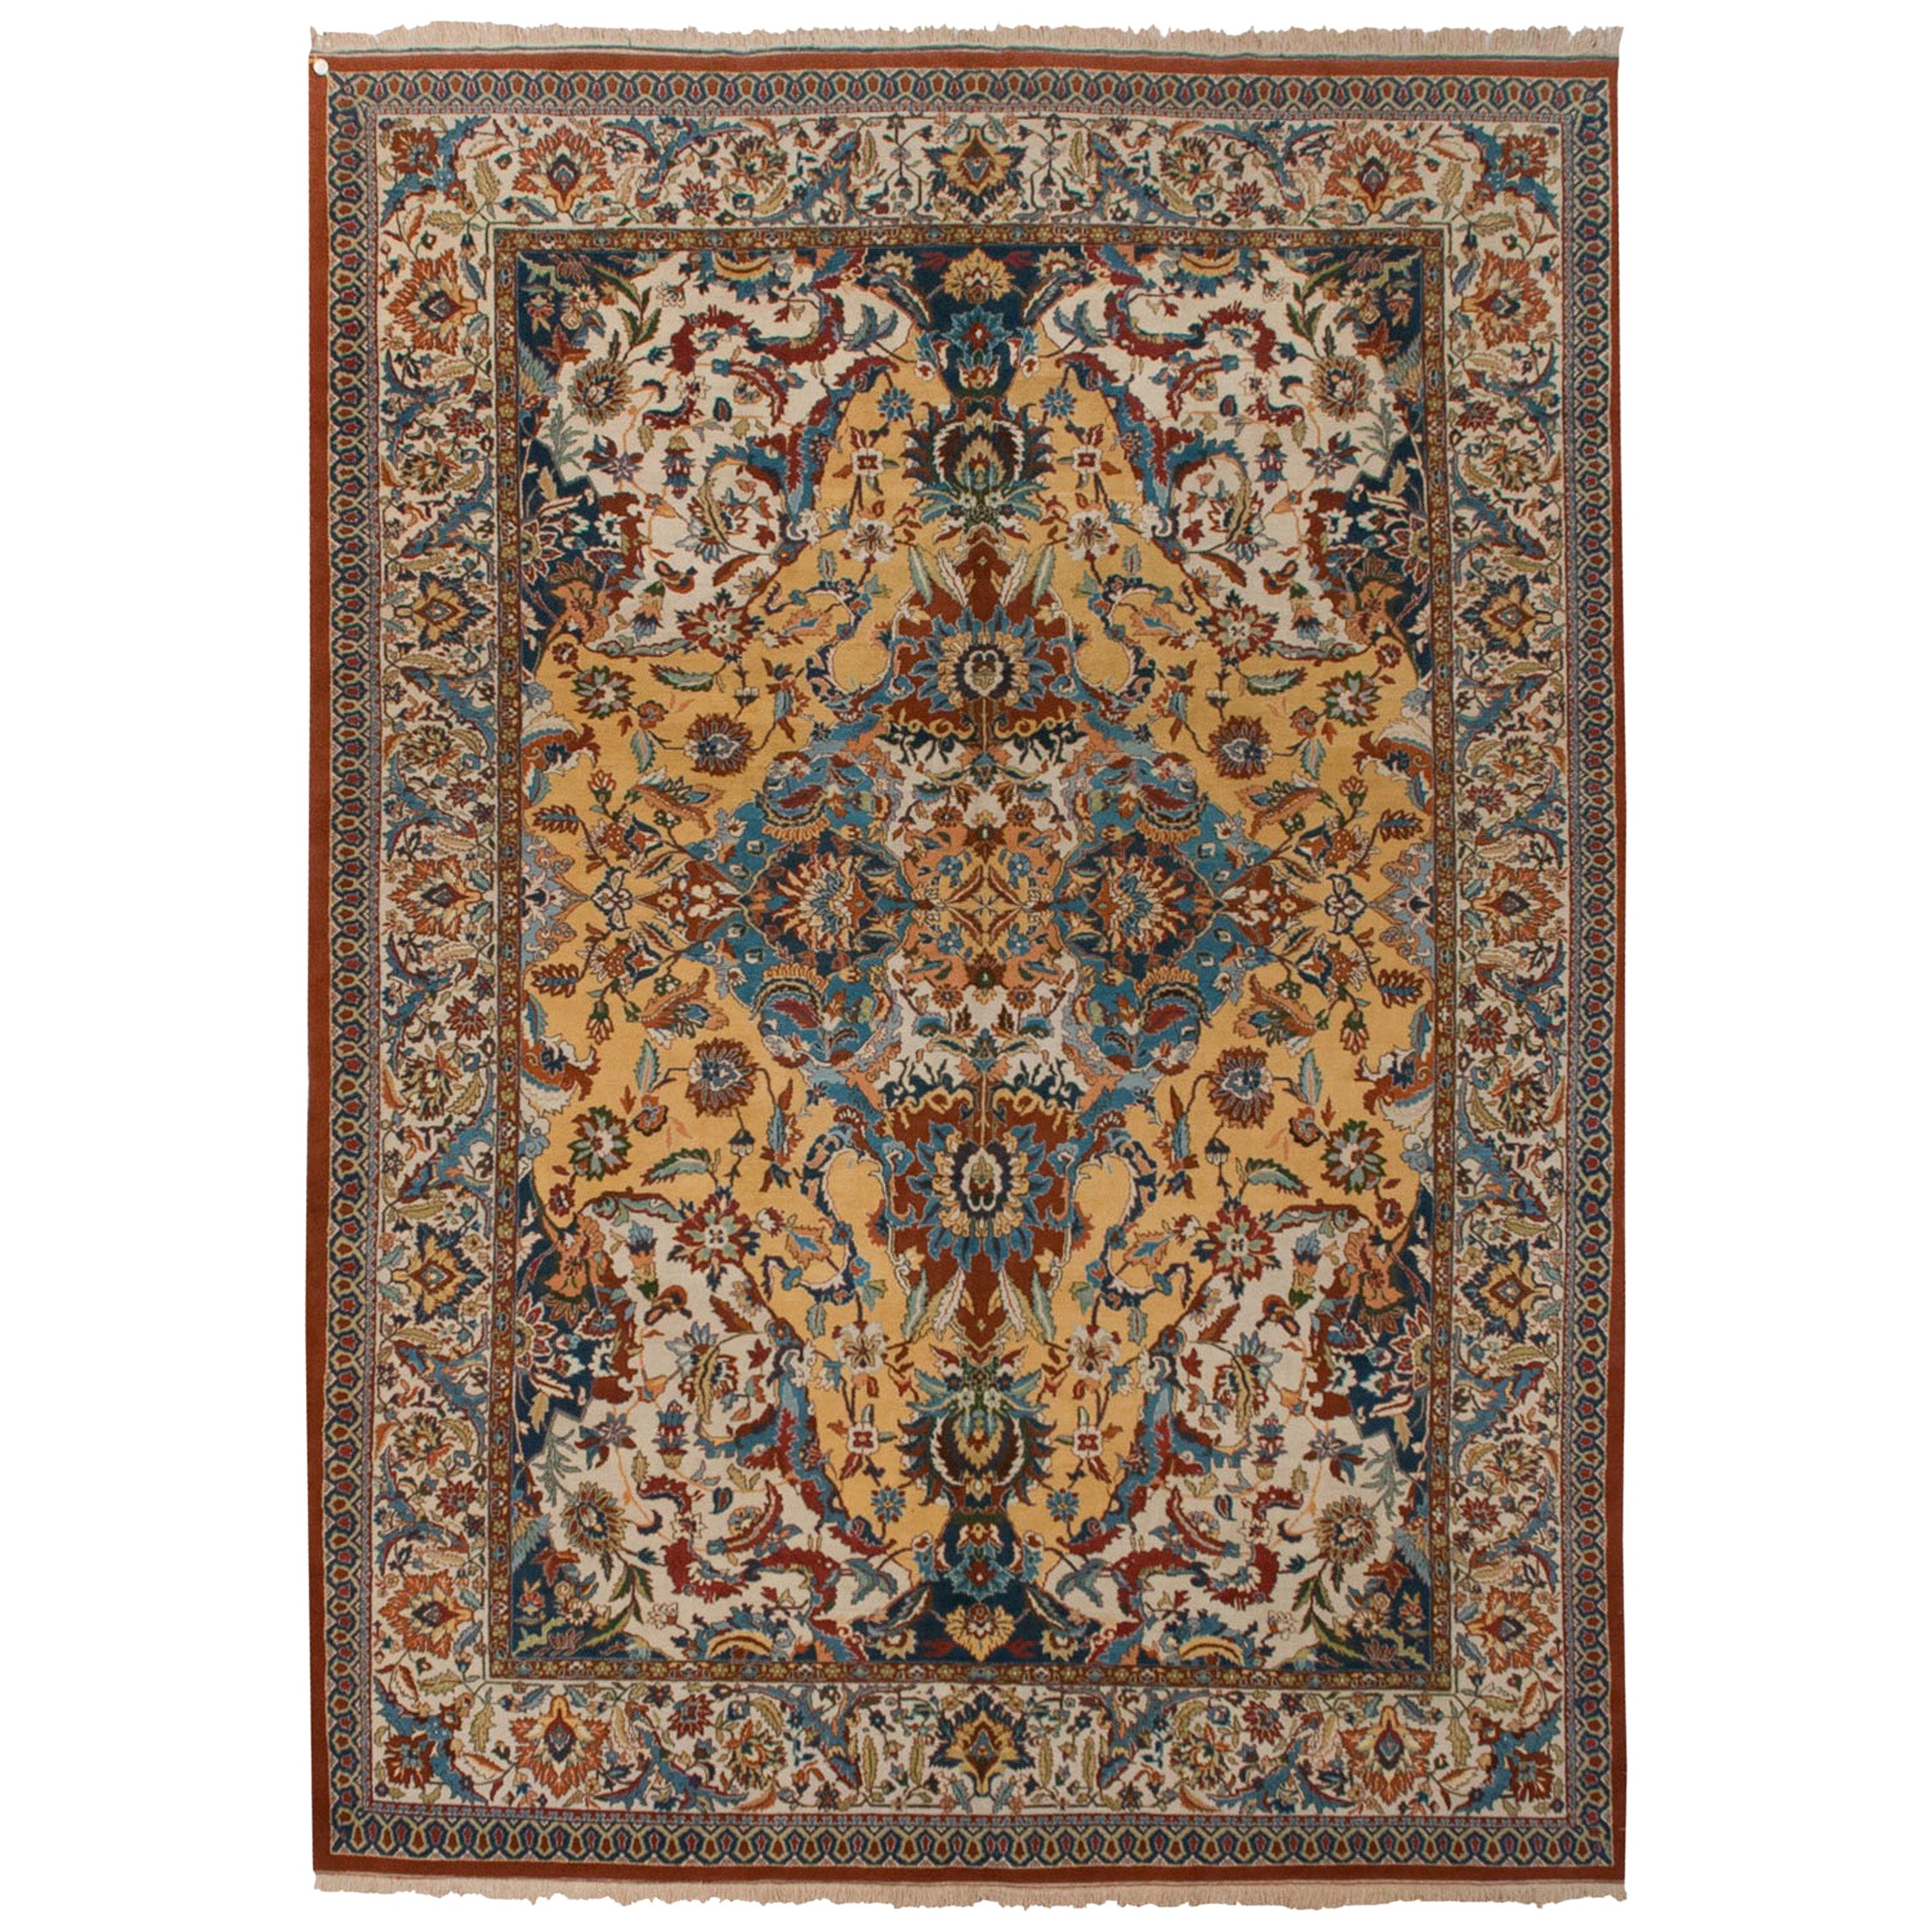 Vintage Indian Polonaise Design Carpet